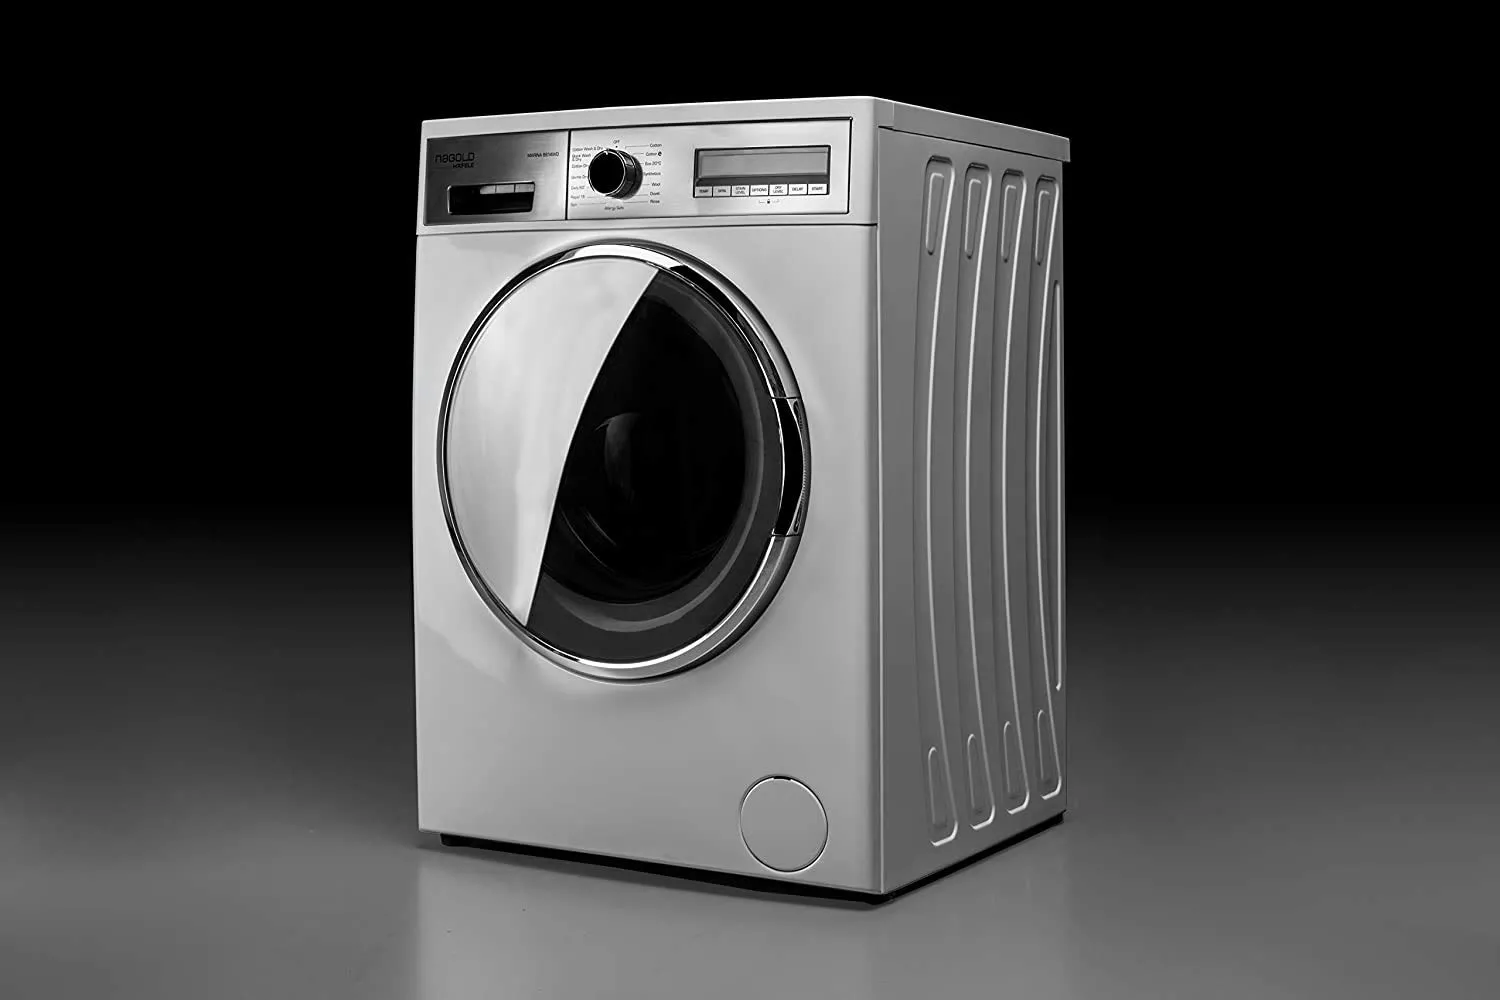 hafele marina fully automatic washer dryer combo, hafele home appliances